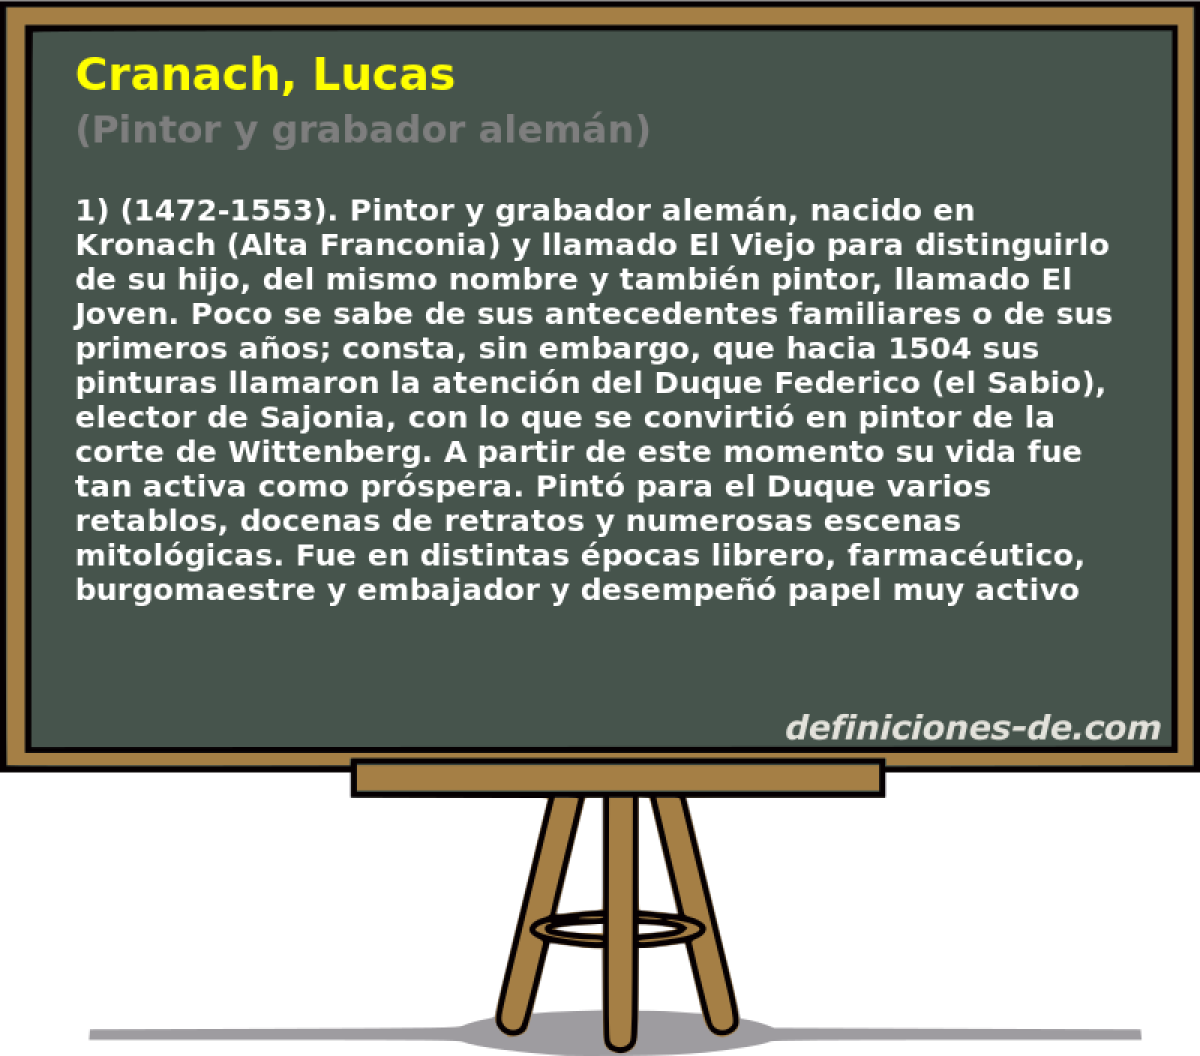 Cranach, Lucas (Pintor y grabador alemn)